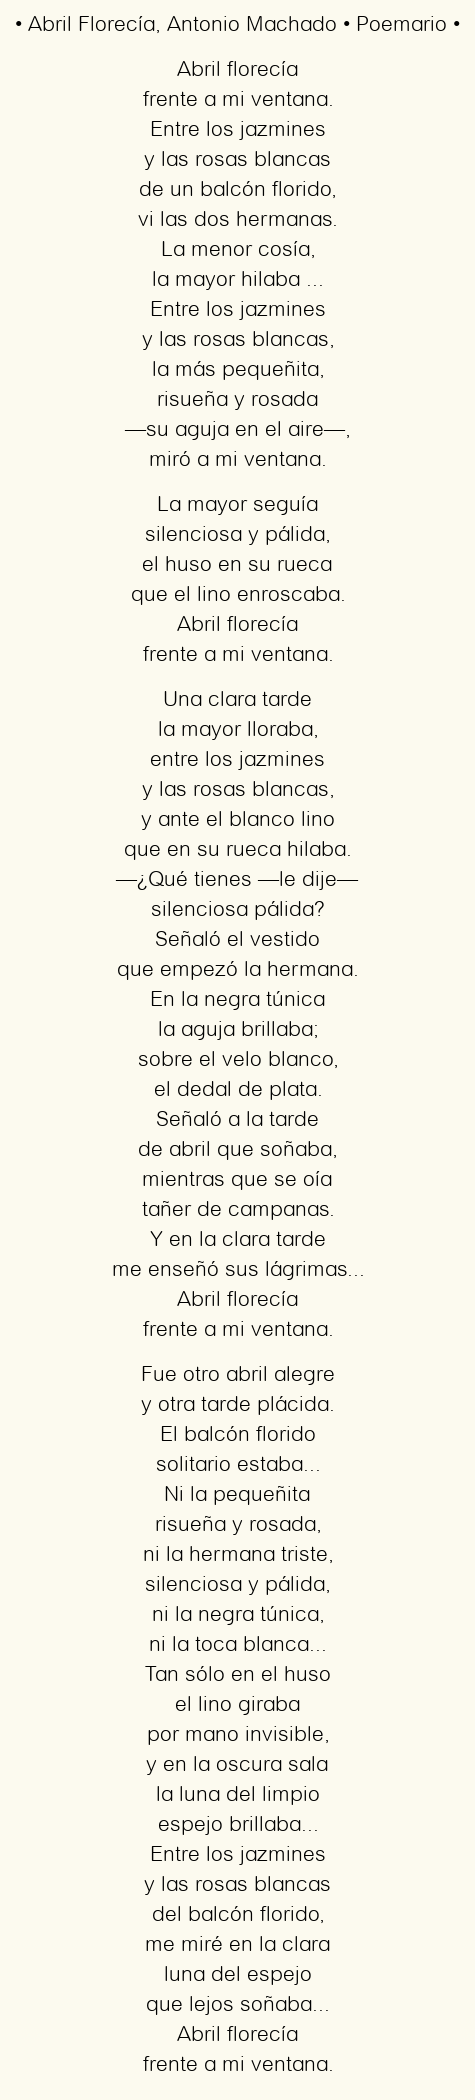 Imagen con el poema Abril Florecía, por Antonio Machado